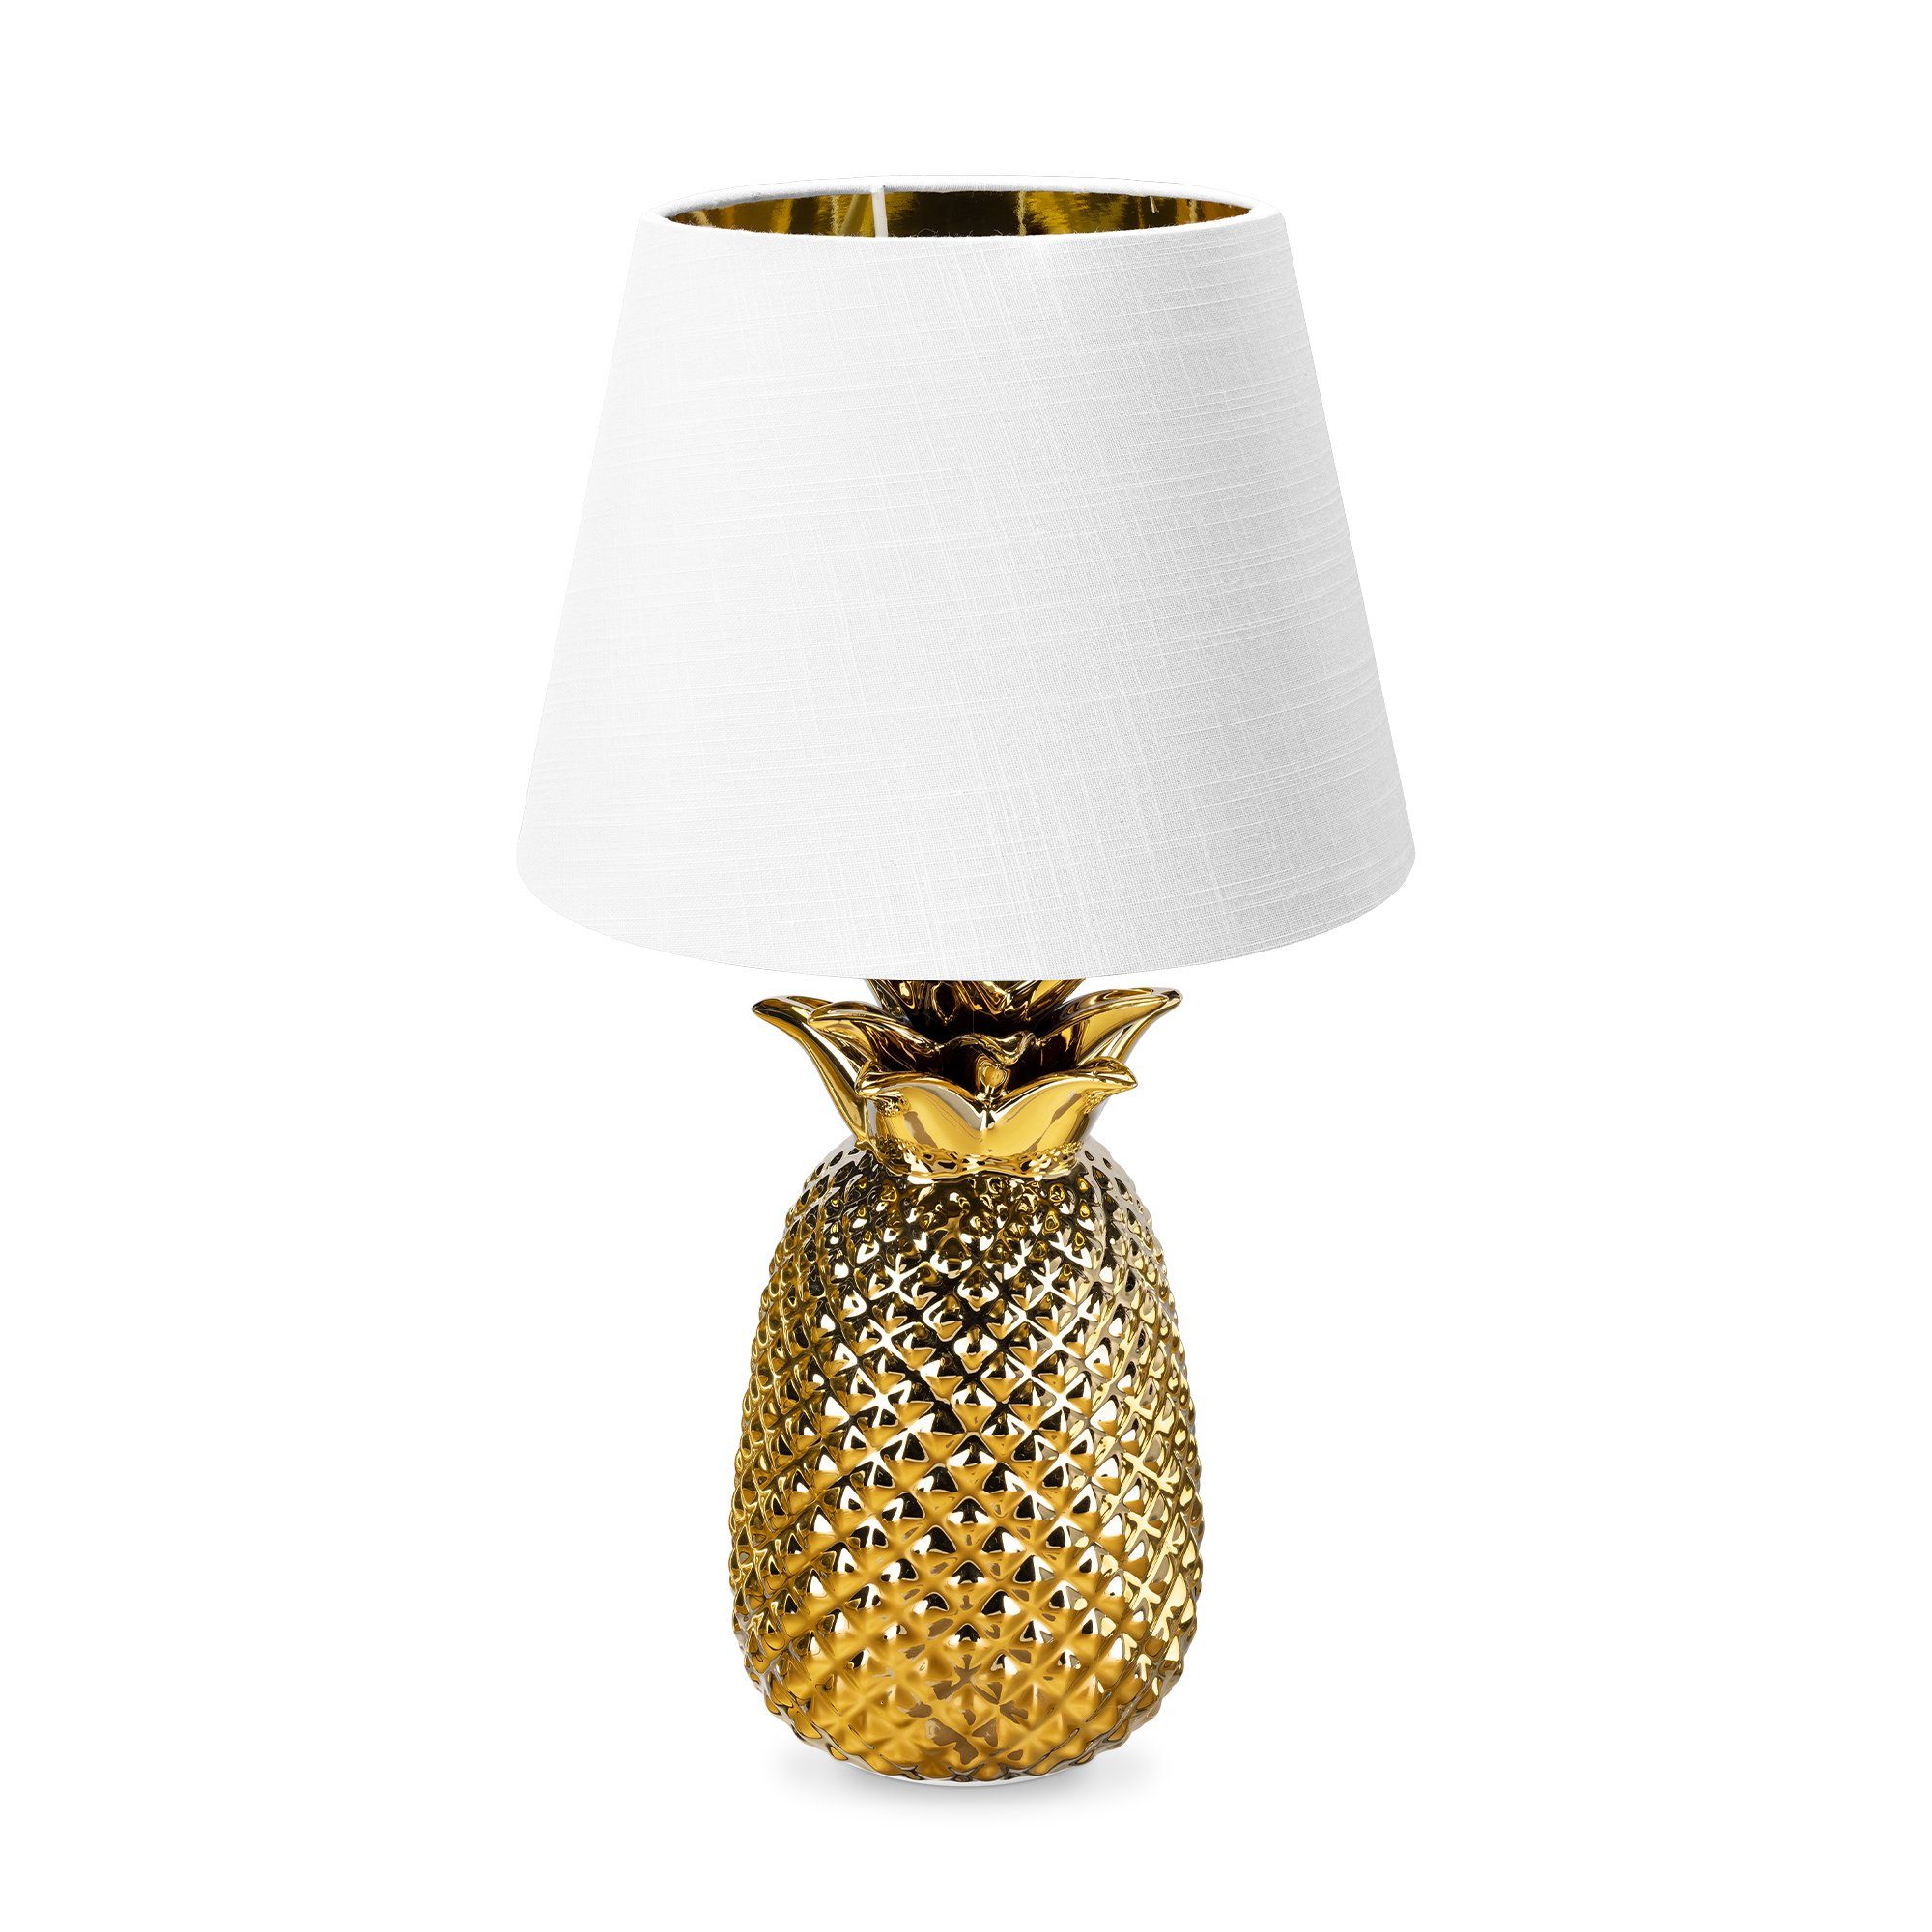 Navaris Tischleuchte Tischlampe Ananas Design - 40cm hoch - Dekolampe mit E27 Gewinde Gold